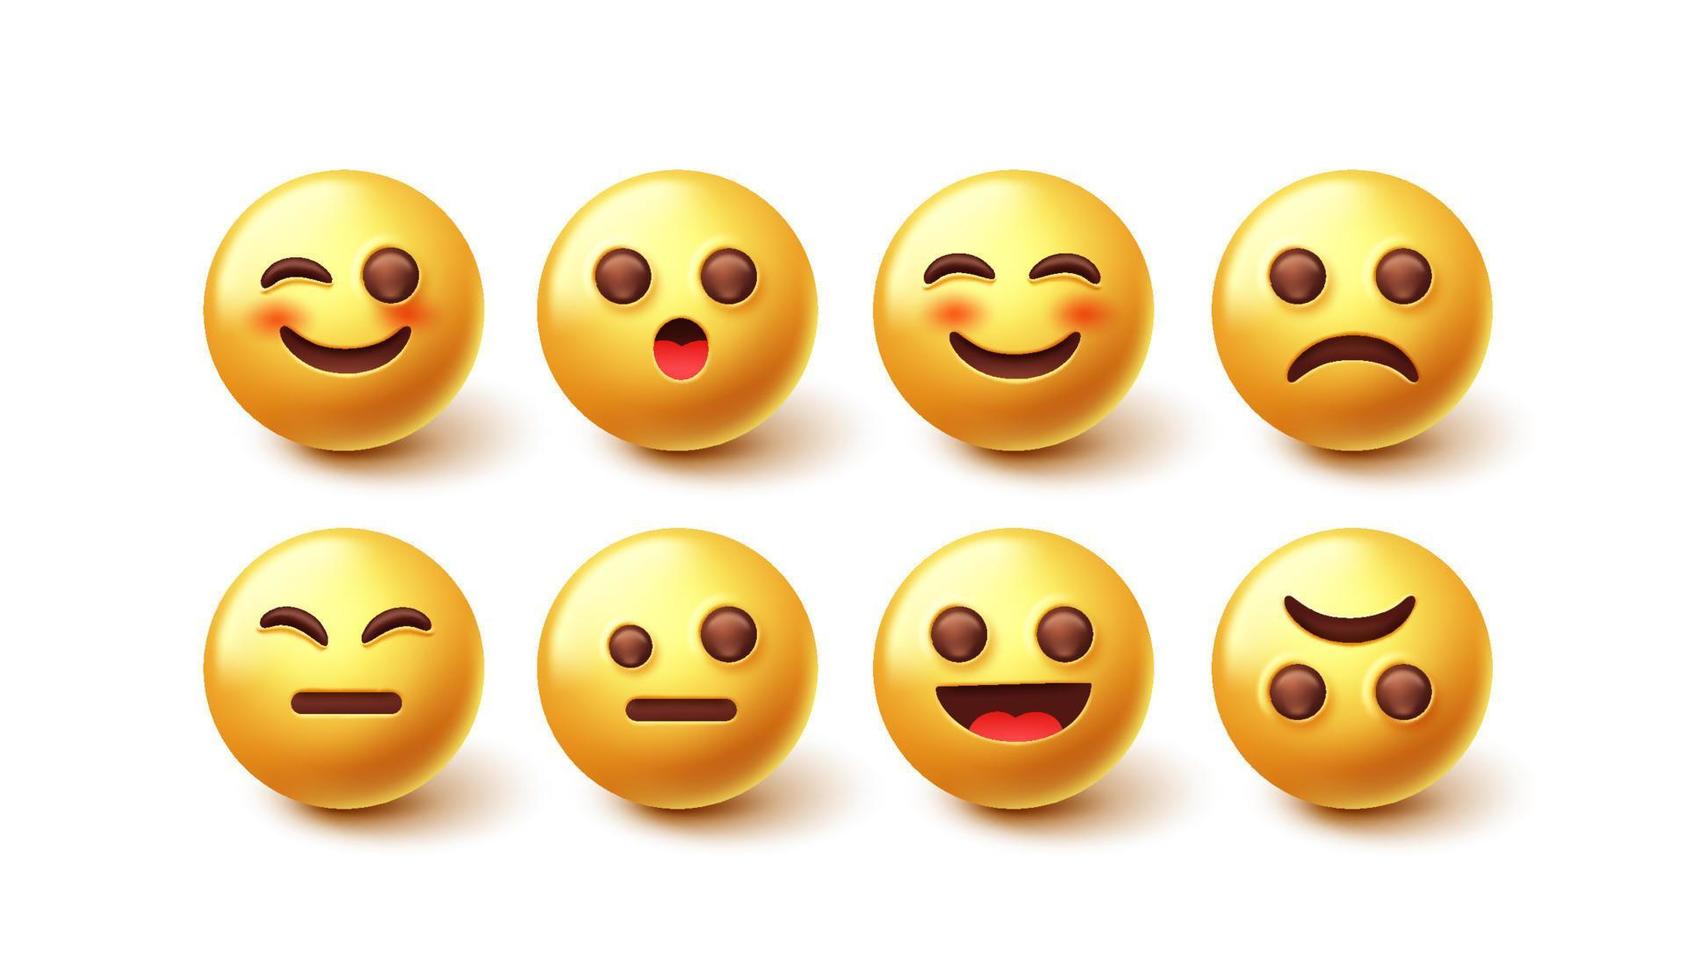 conjunto de vectores de personajes emoji. emoticon diseño de personajes 3d en la colección de caras felices y tristes aislado en fondo blanco para la expresión gráfica de emojis. ilustración vectorial.